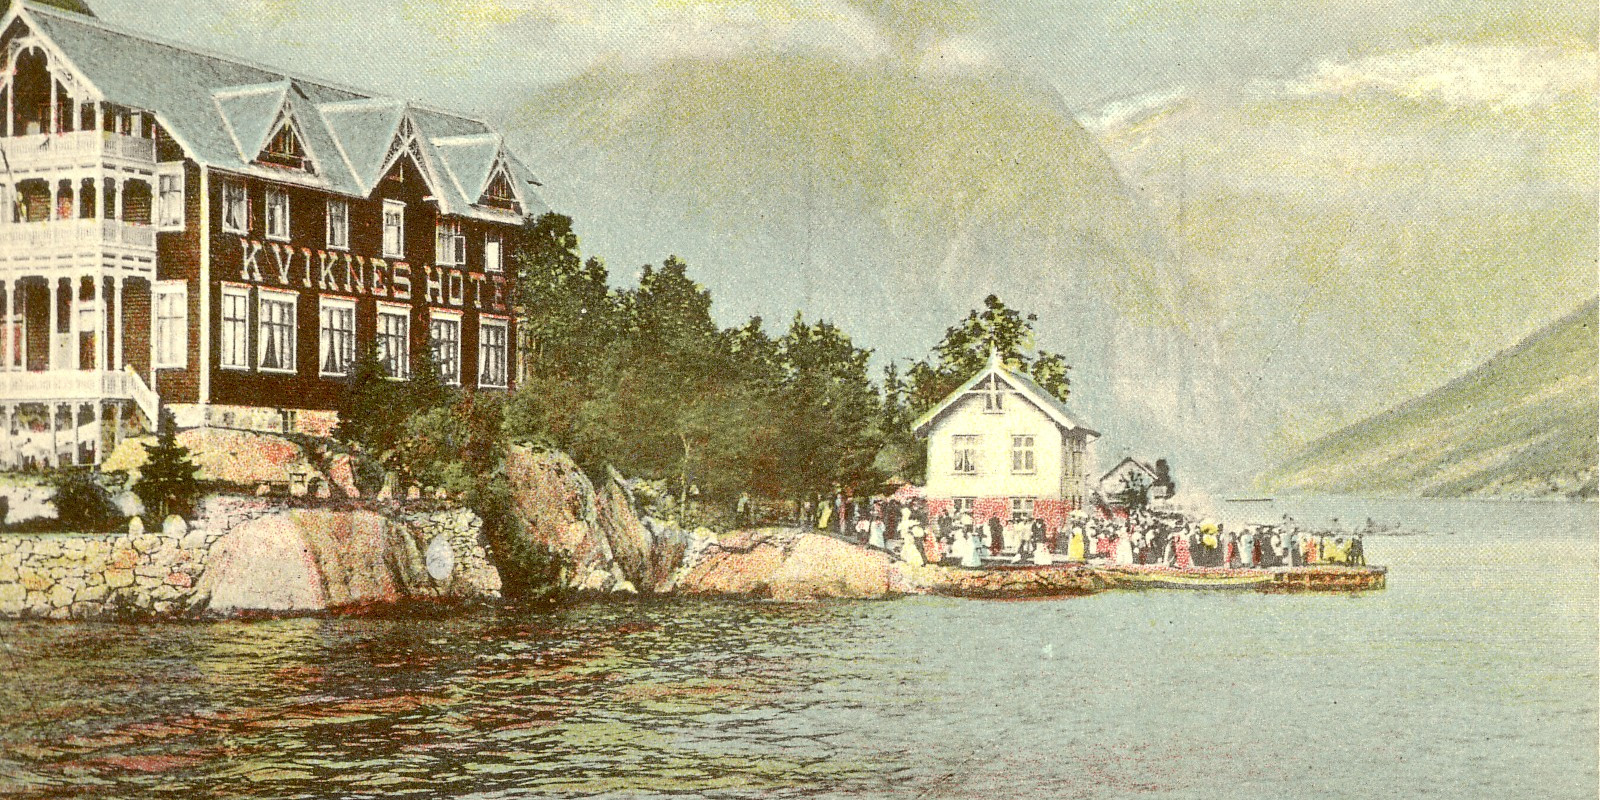 norsk-reiselivsmuseum/Norsk-Reiselivsmuseum-Kviknes-Hotel-Kaihuset-MSF-00757-1654174372.JPG.